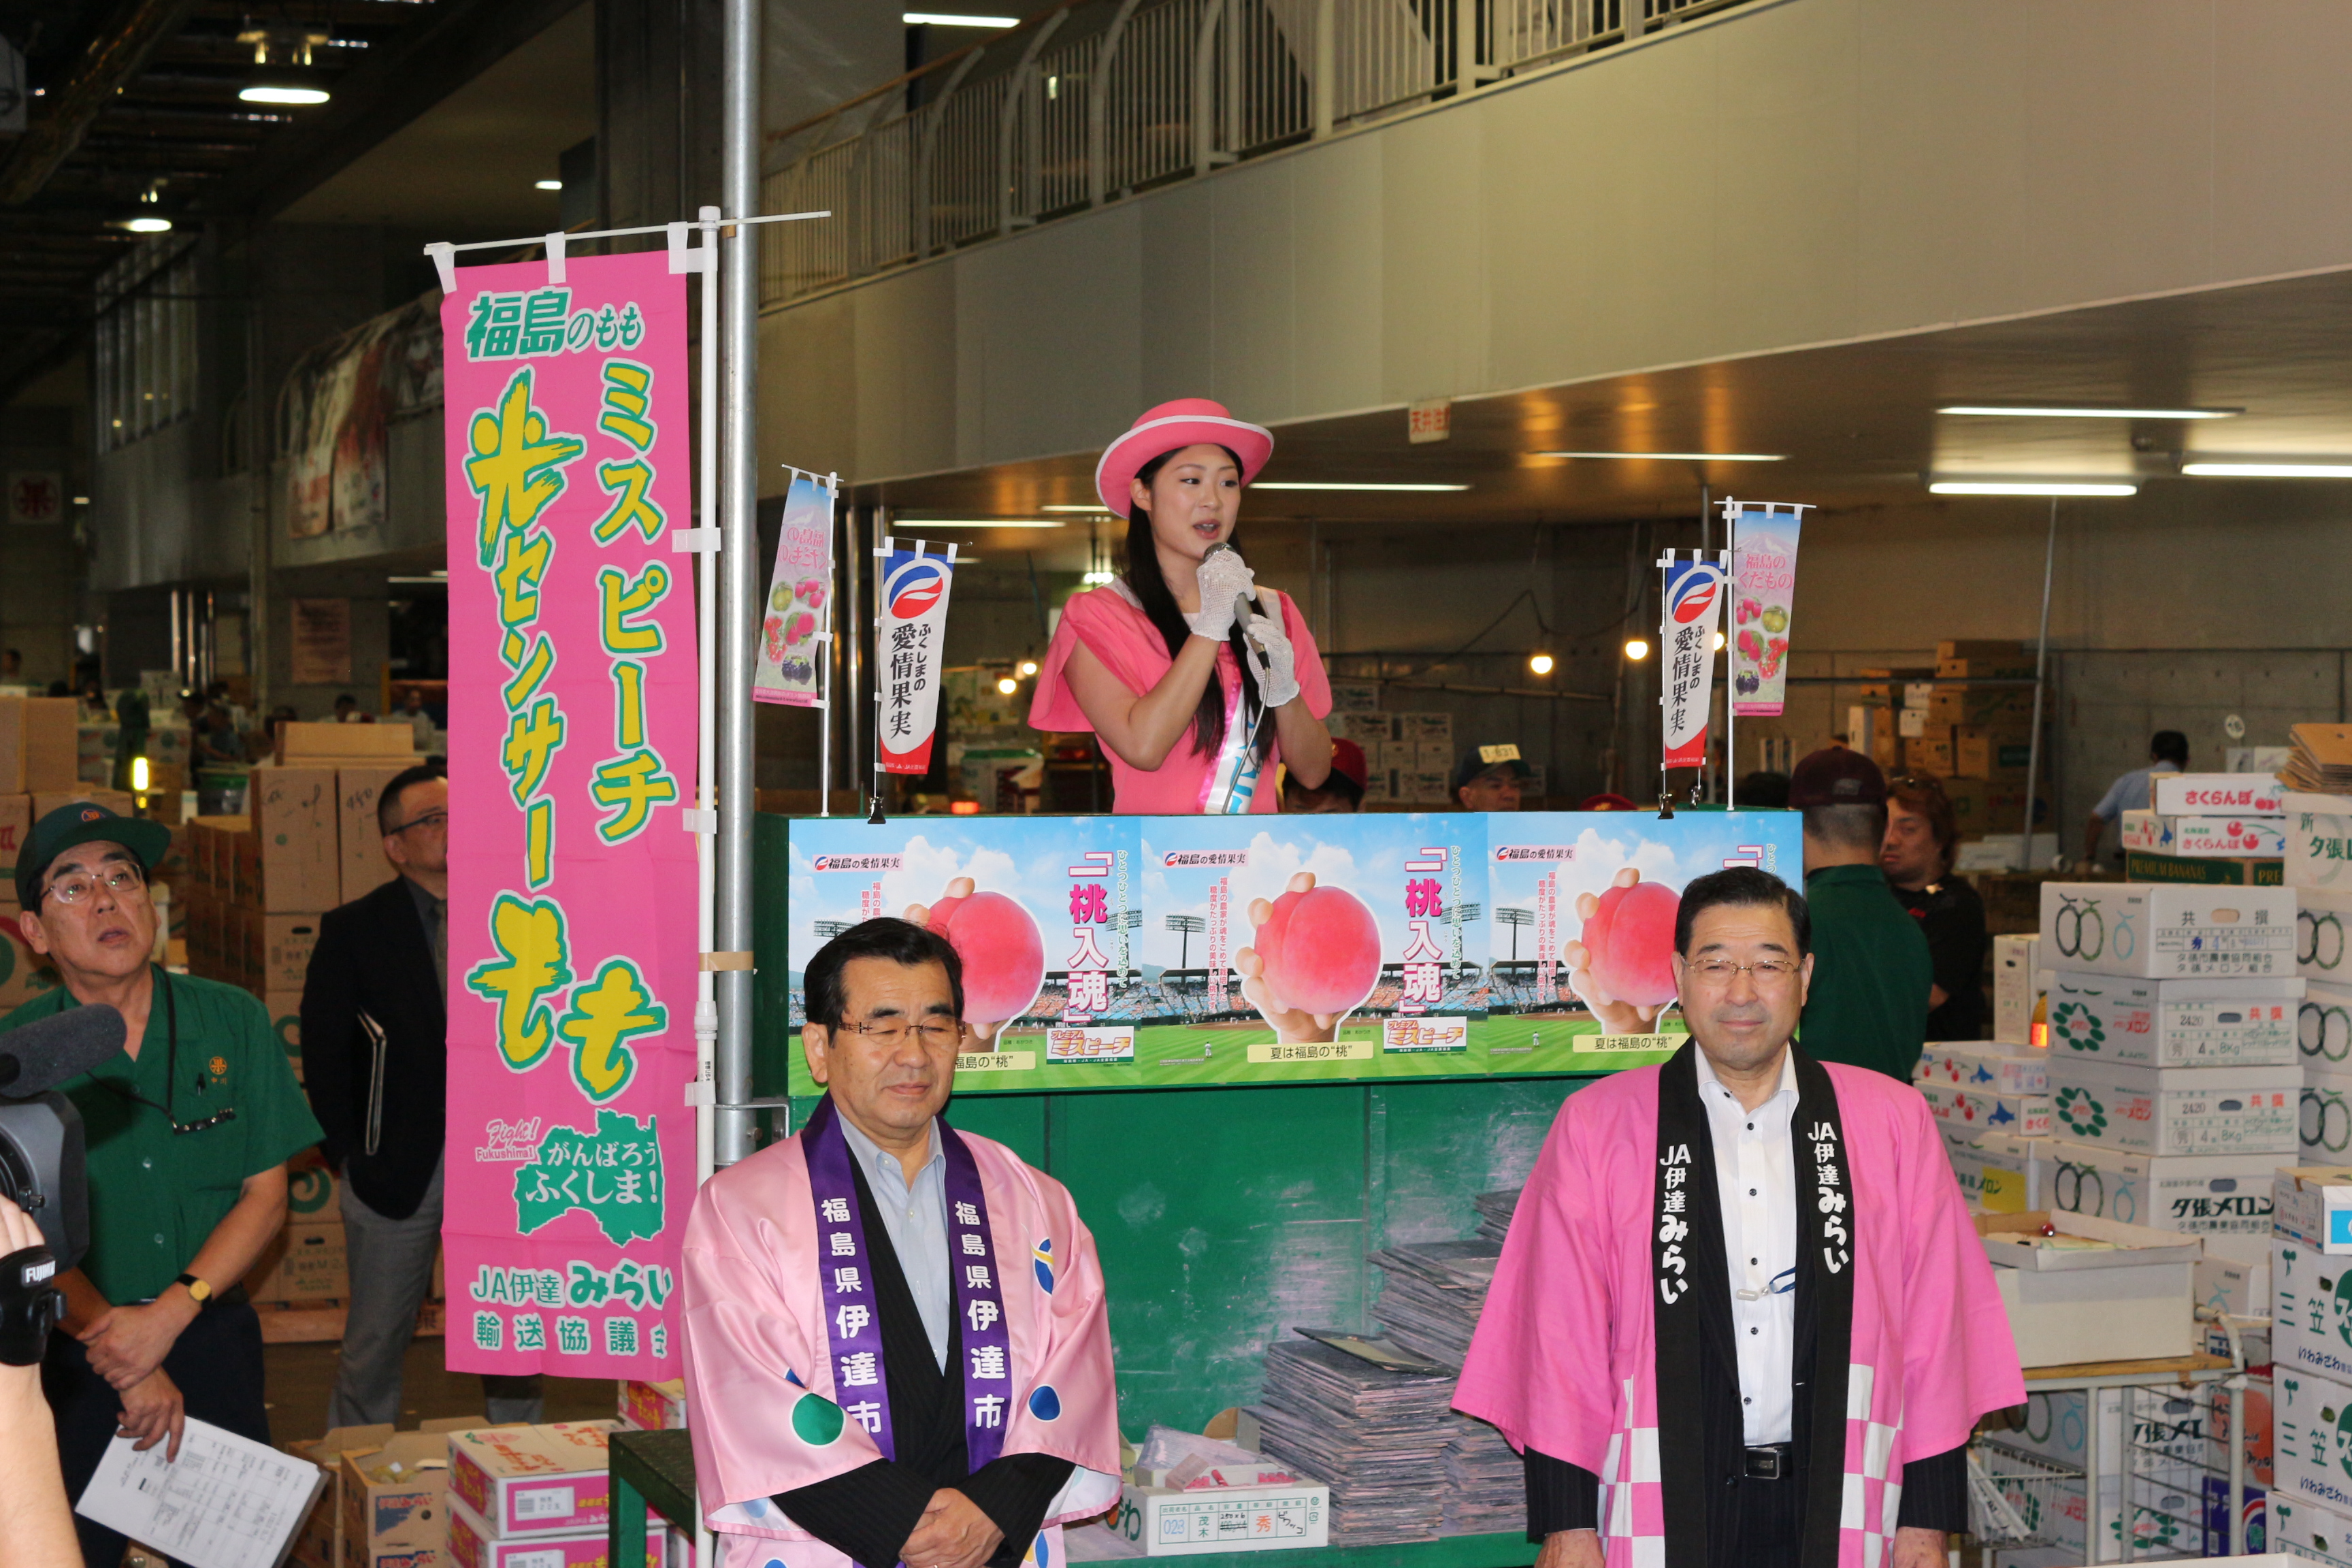 市場トピックス Blog Archive 福島県から ミスピーチキャンペーンクルー がやってきた